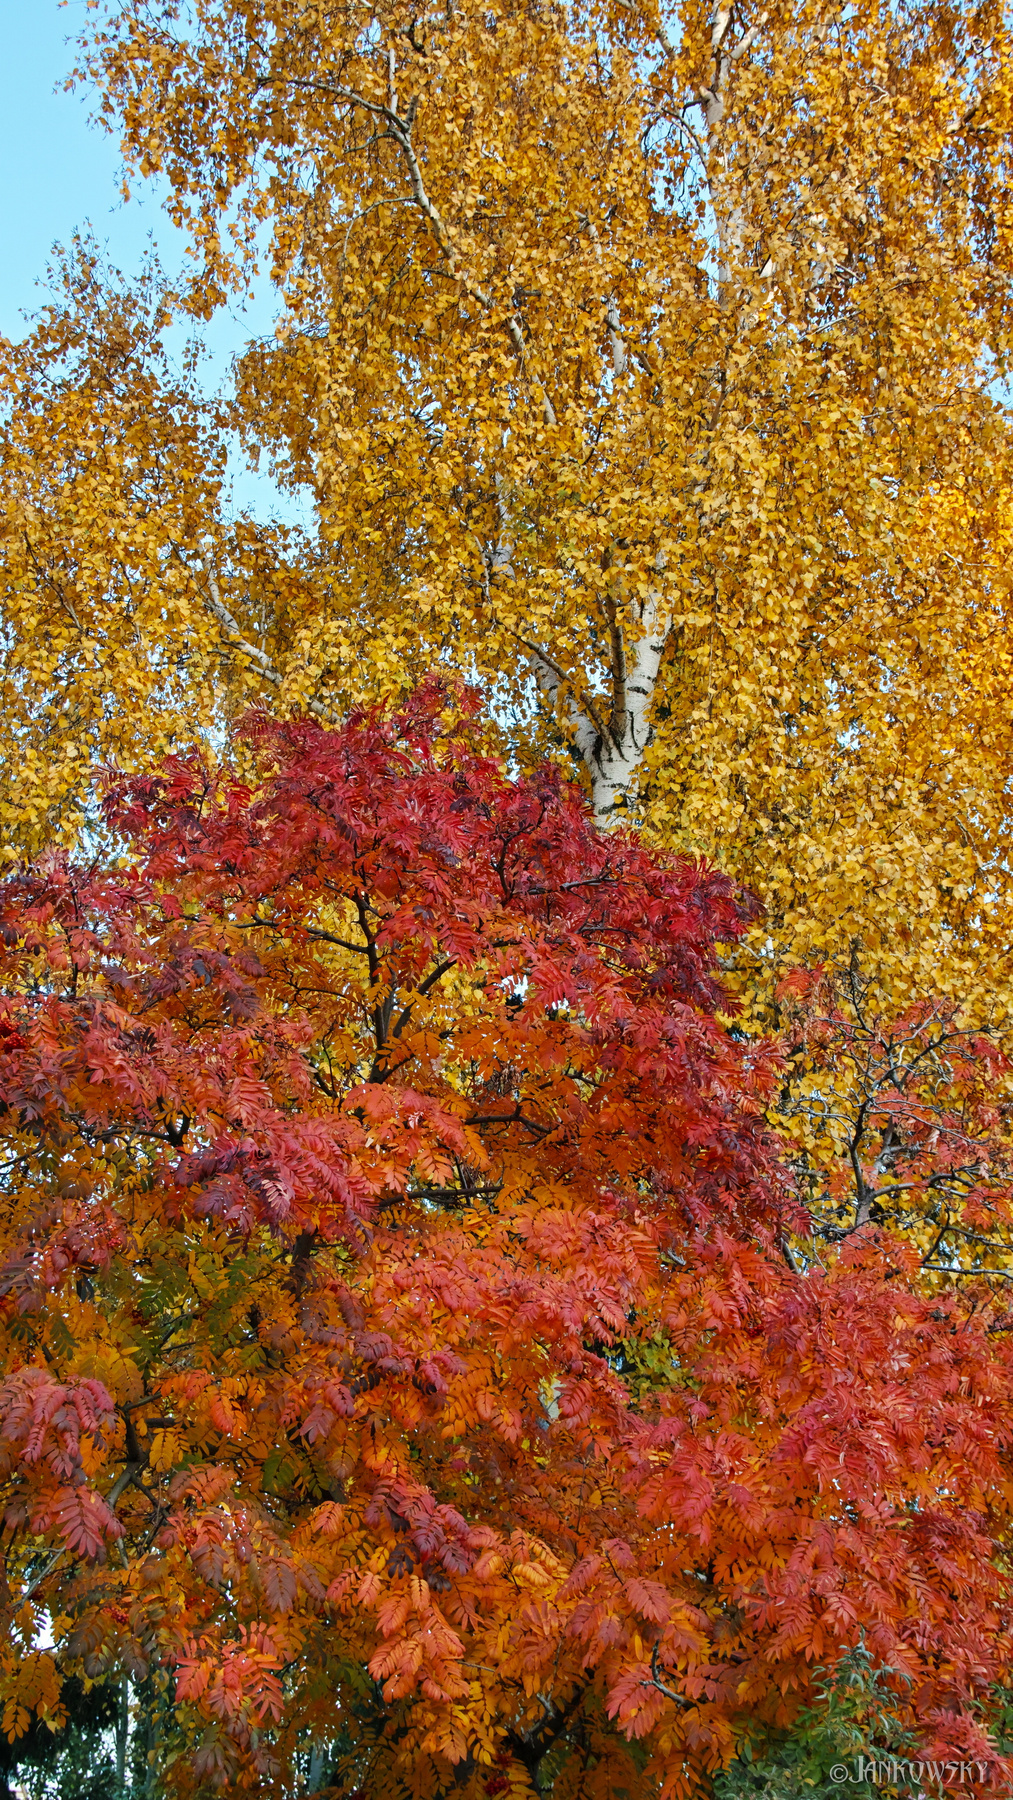 Идеальная октярьская заставка для смартфона Sigma sd Quattro Омск сквер им Морозова обои смартфона октябрь осень красные листья береза